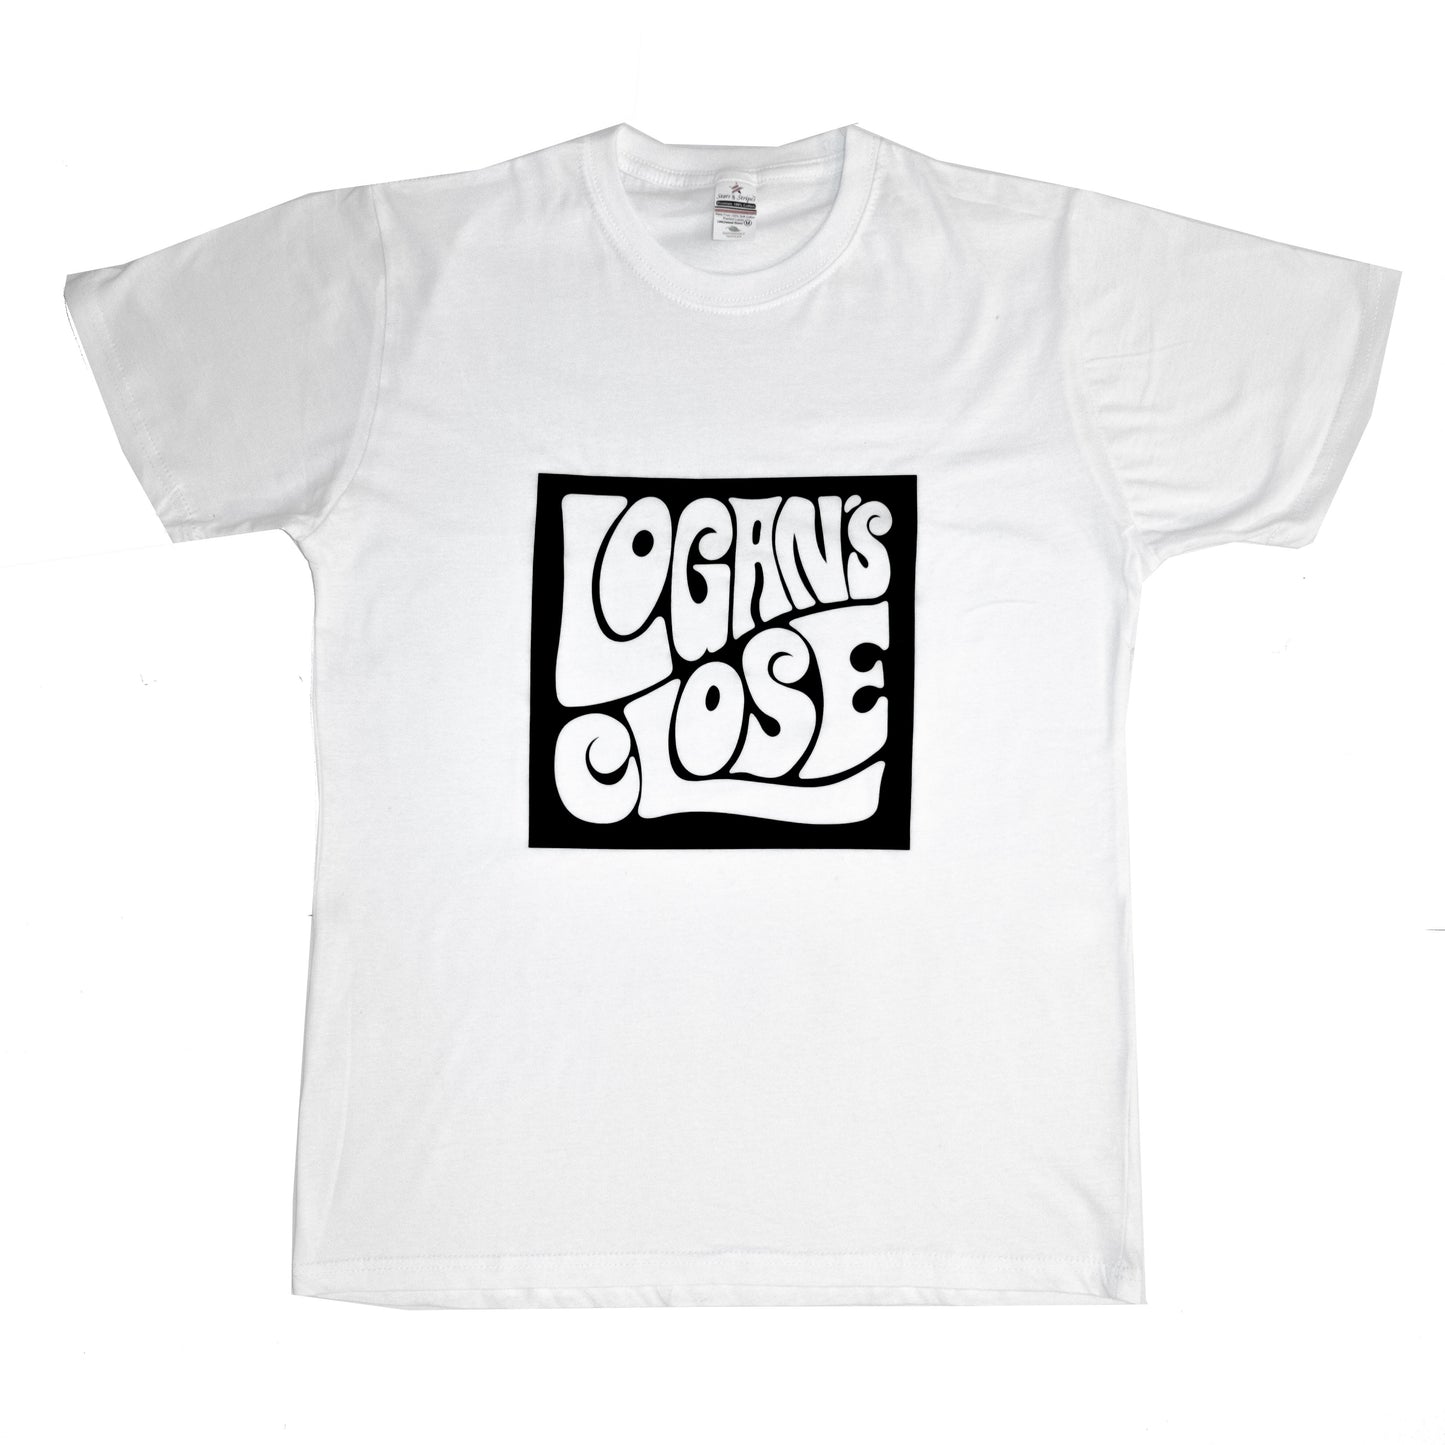 Camiseta con logo Logan's Close - Blanco/Negro